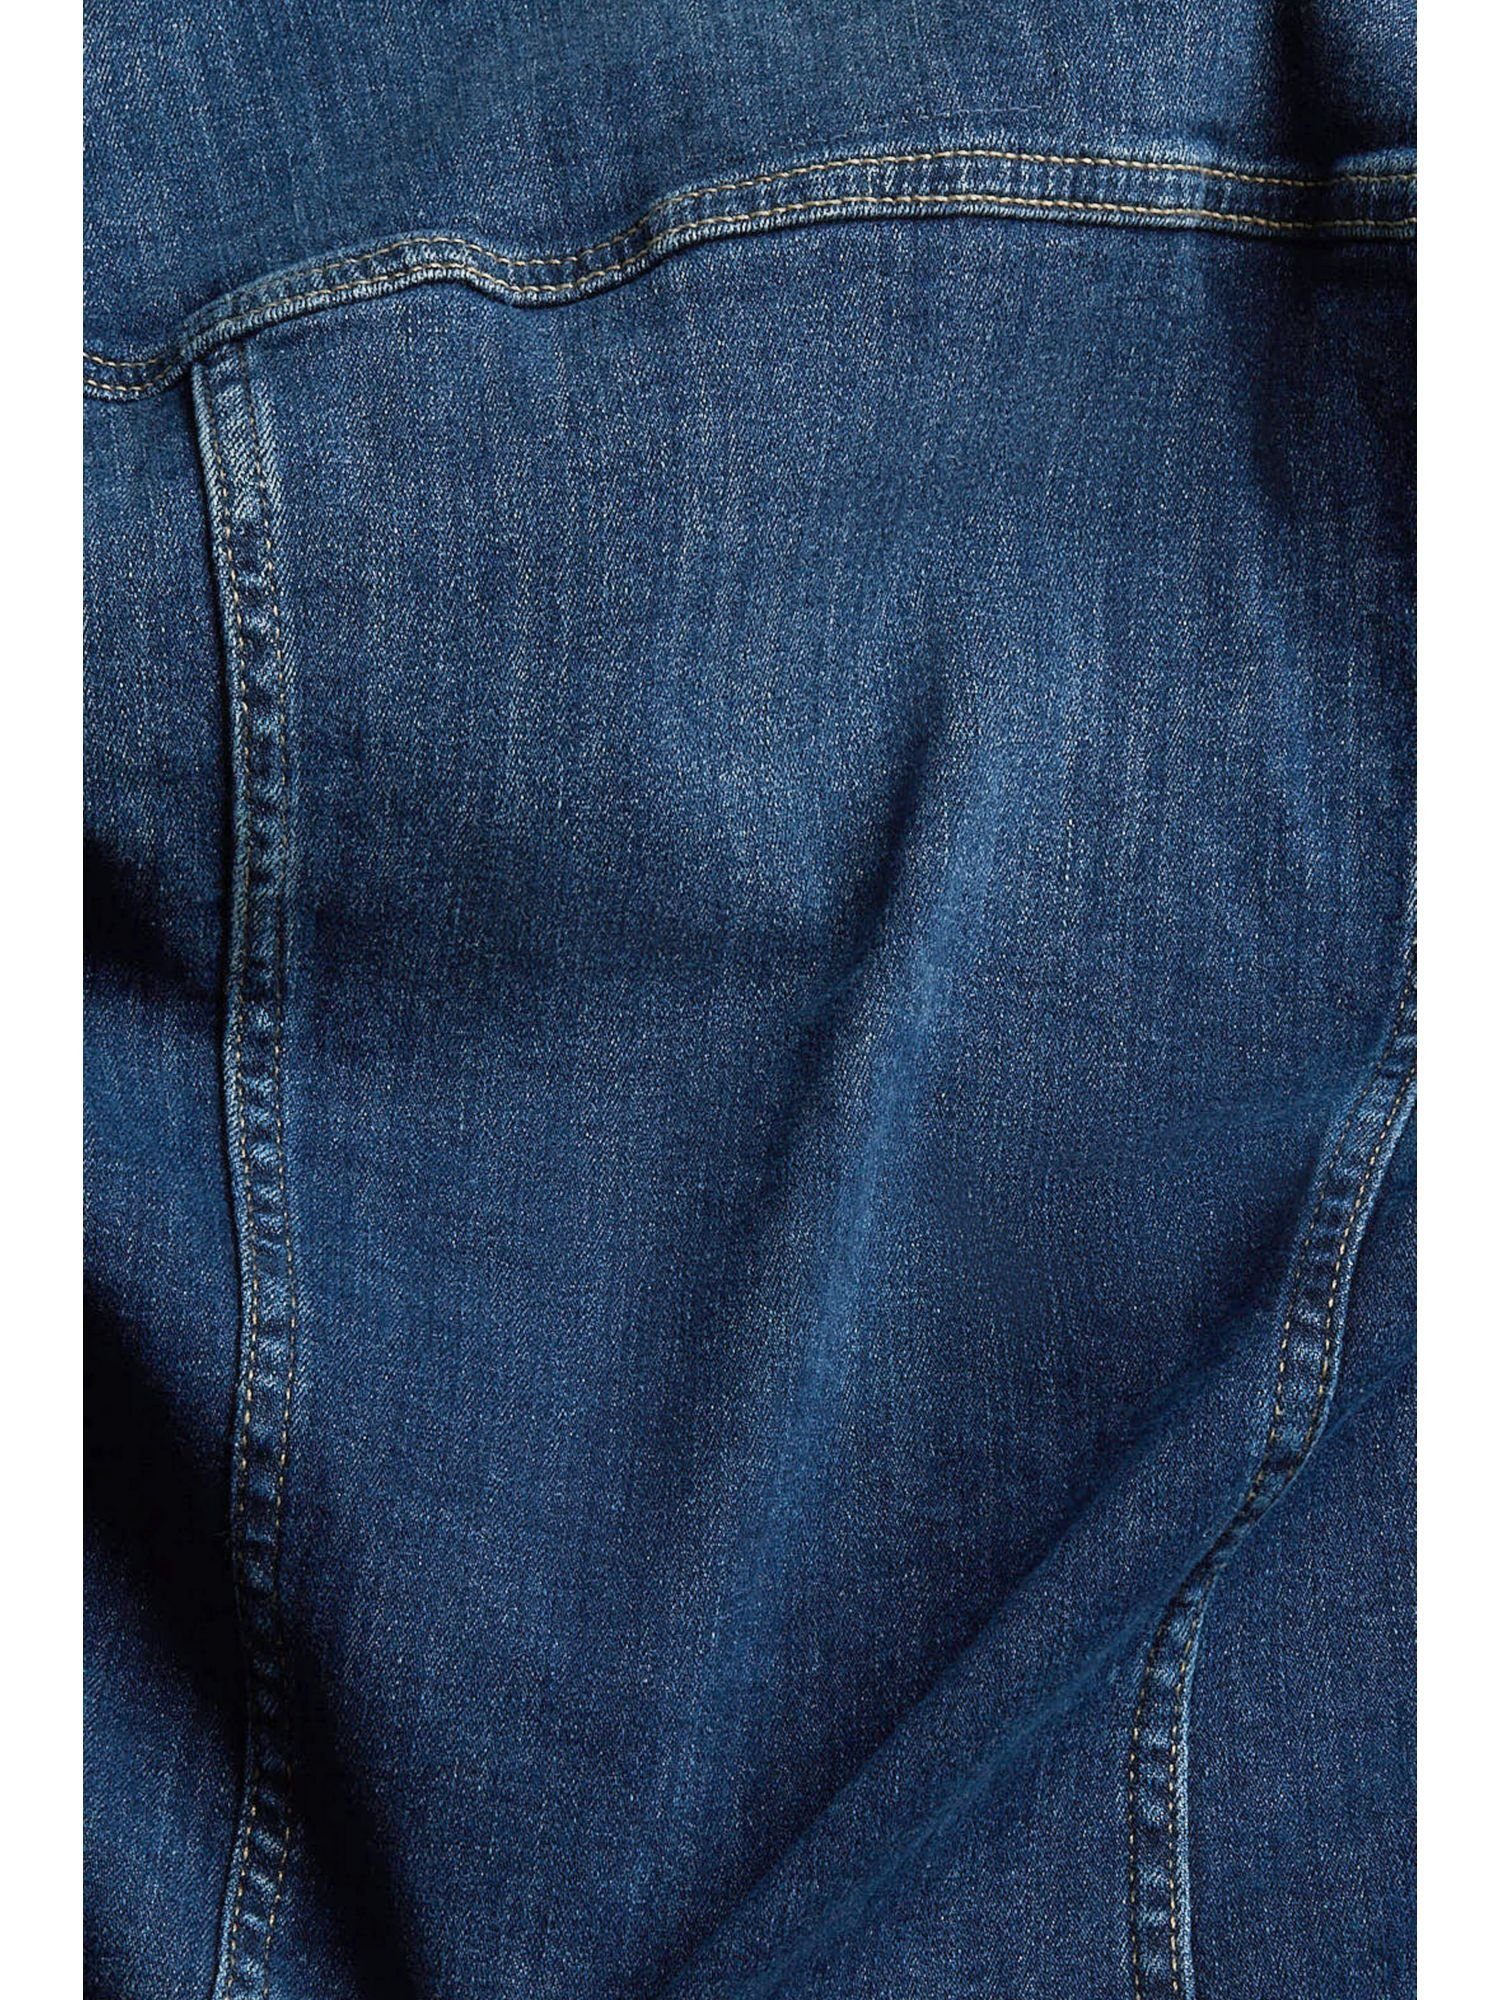 Esprit Jeansjacke Jeansjacke in schmaler DARK WASHED Passform BLUE